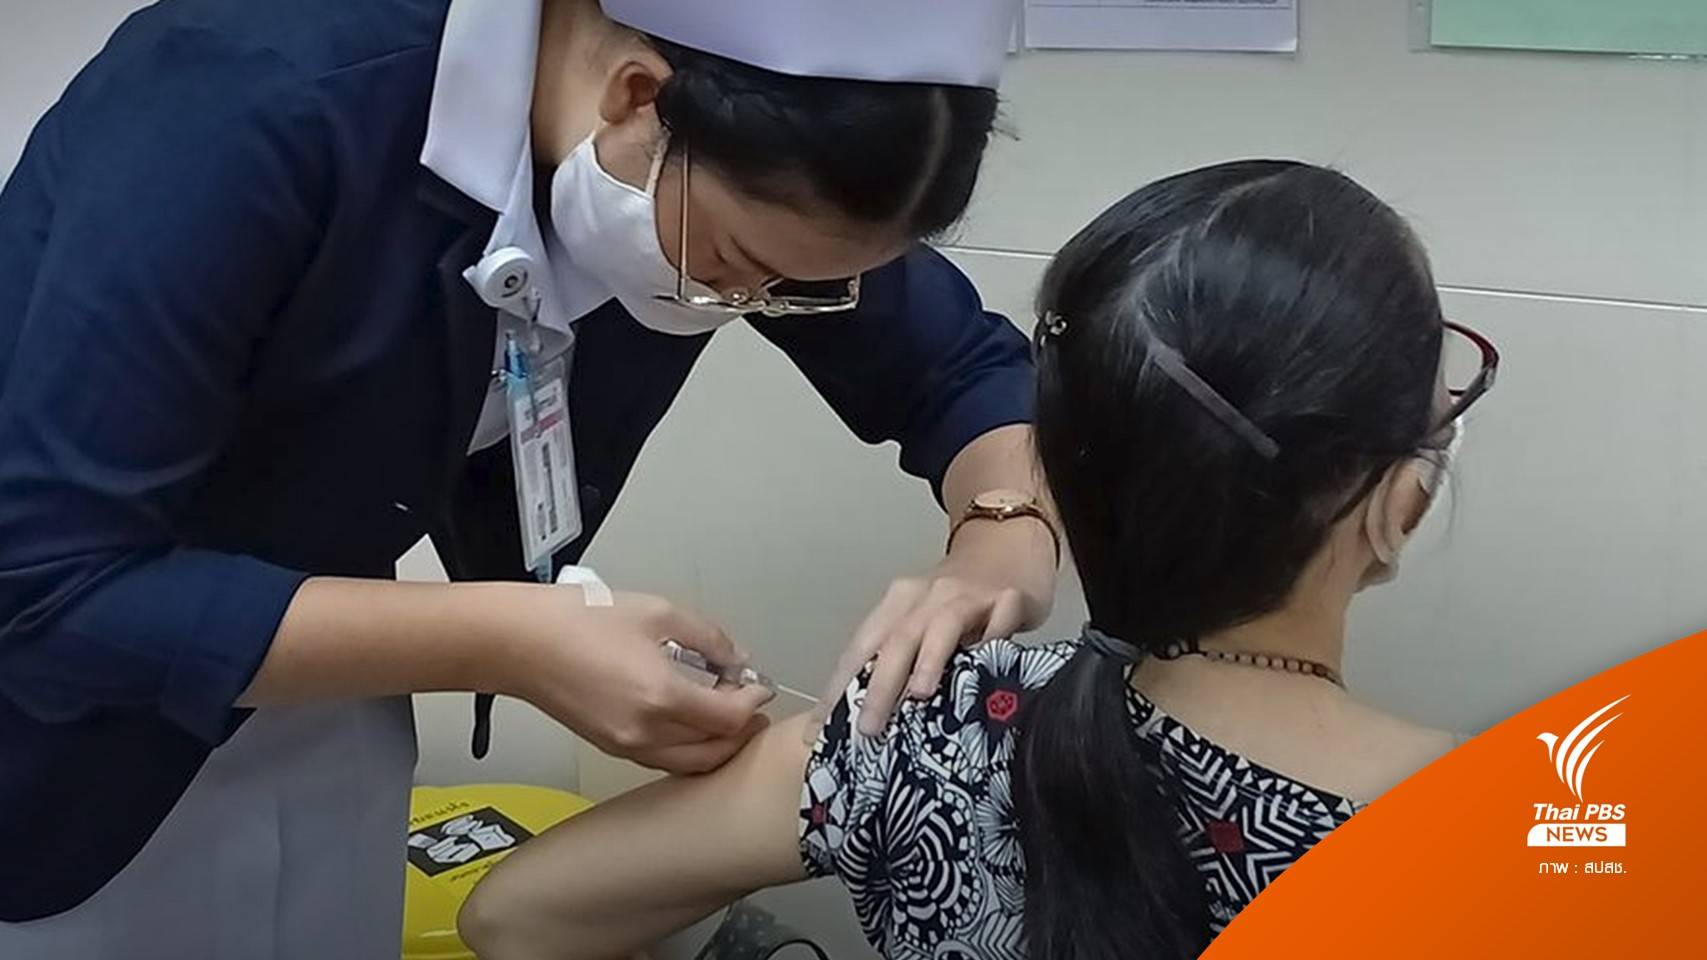 ชวนคนไทยฉีดวัคซีนไข้หวัดใหญ่ฟรี 13-17 ธ.ค.ศูนย์ราชการฯ แจ้งวัฒนะ